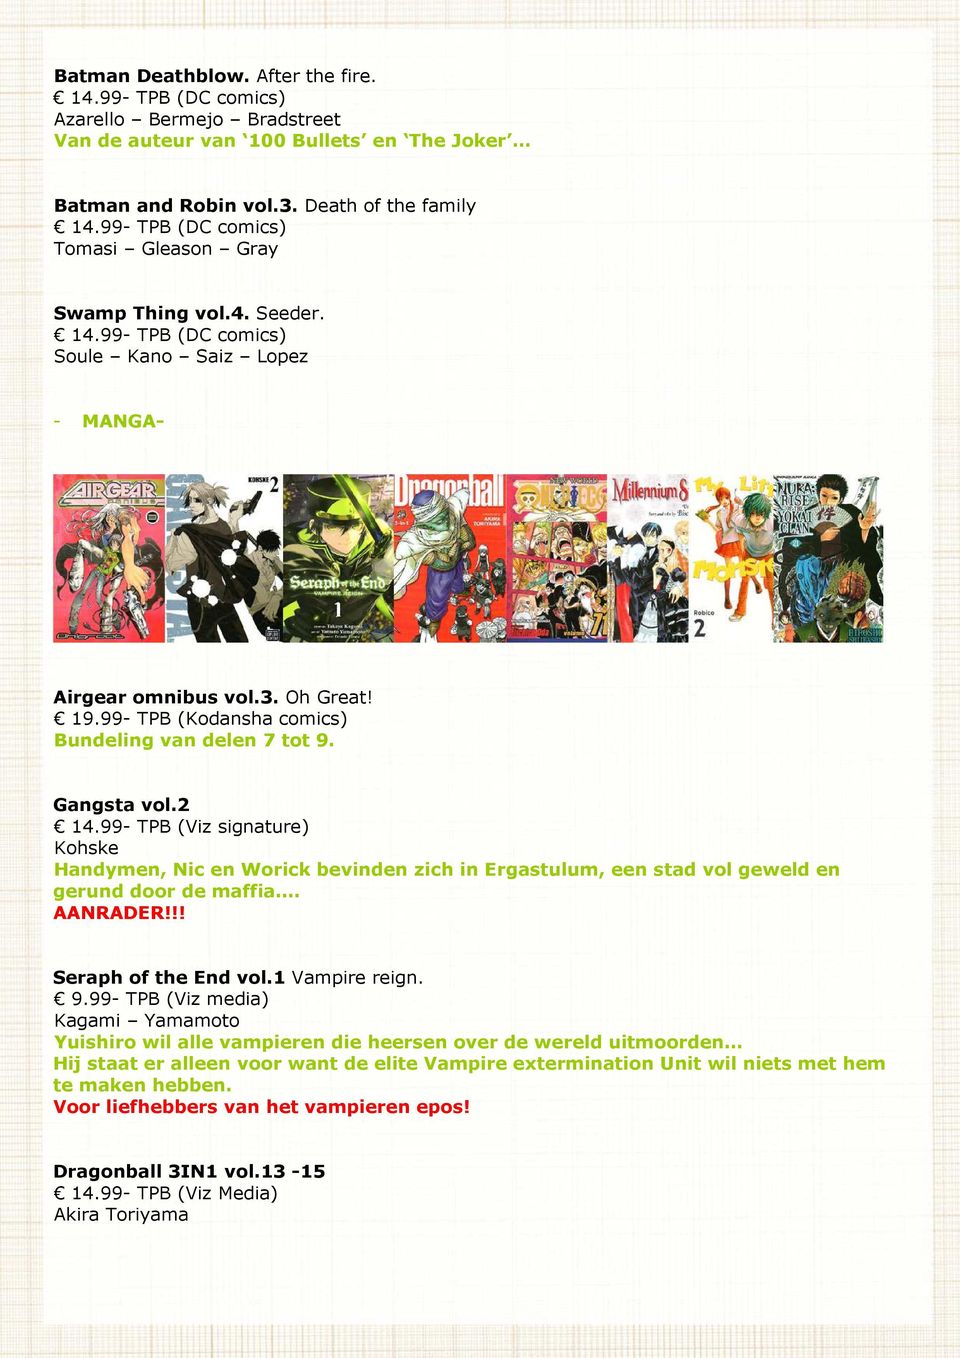 99- TPB (Kodansha comics) Bundeling van delen 7 tot 9. Gangsta vol.2 14.